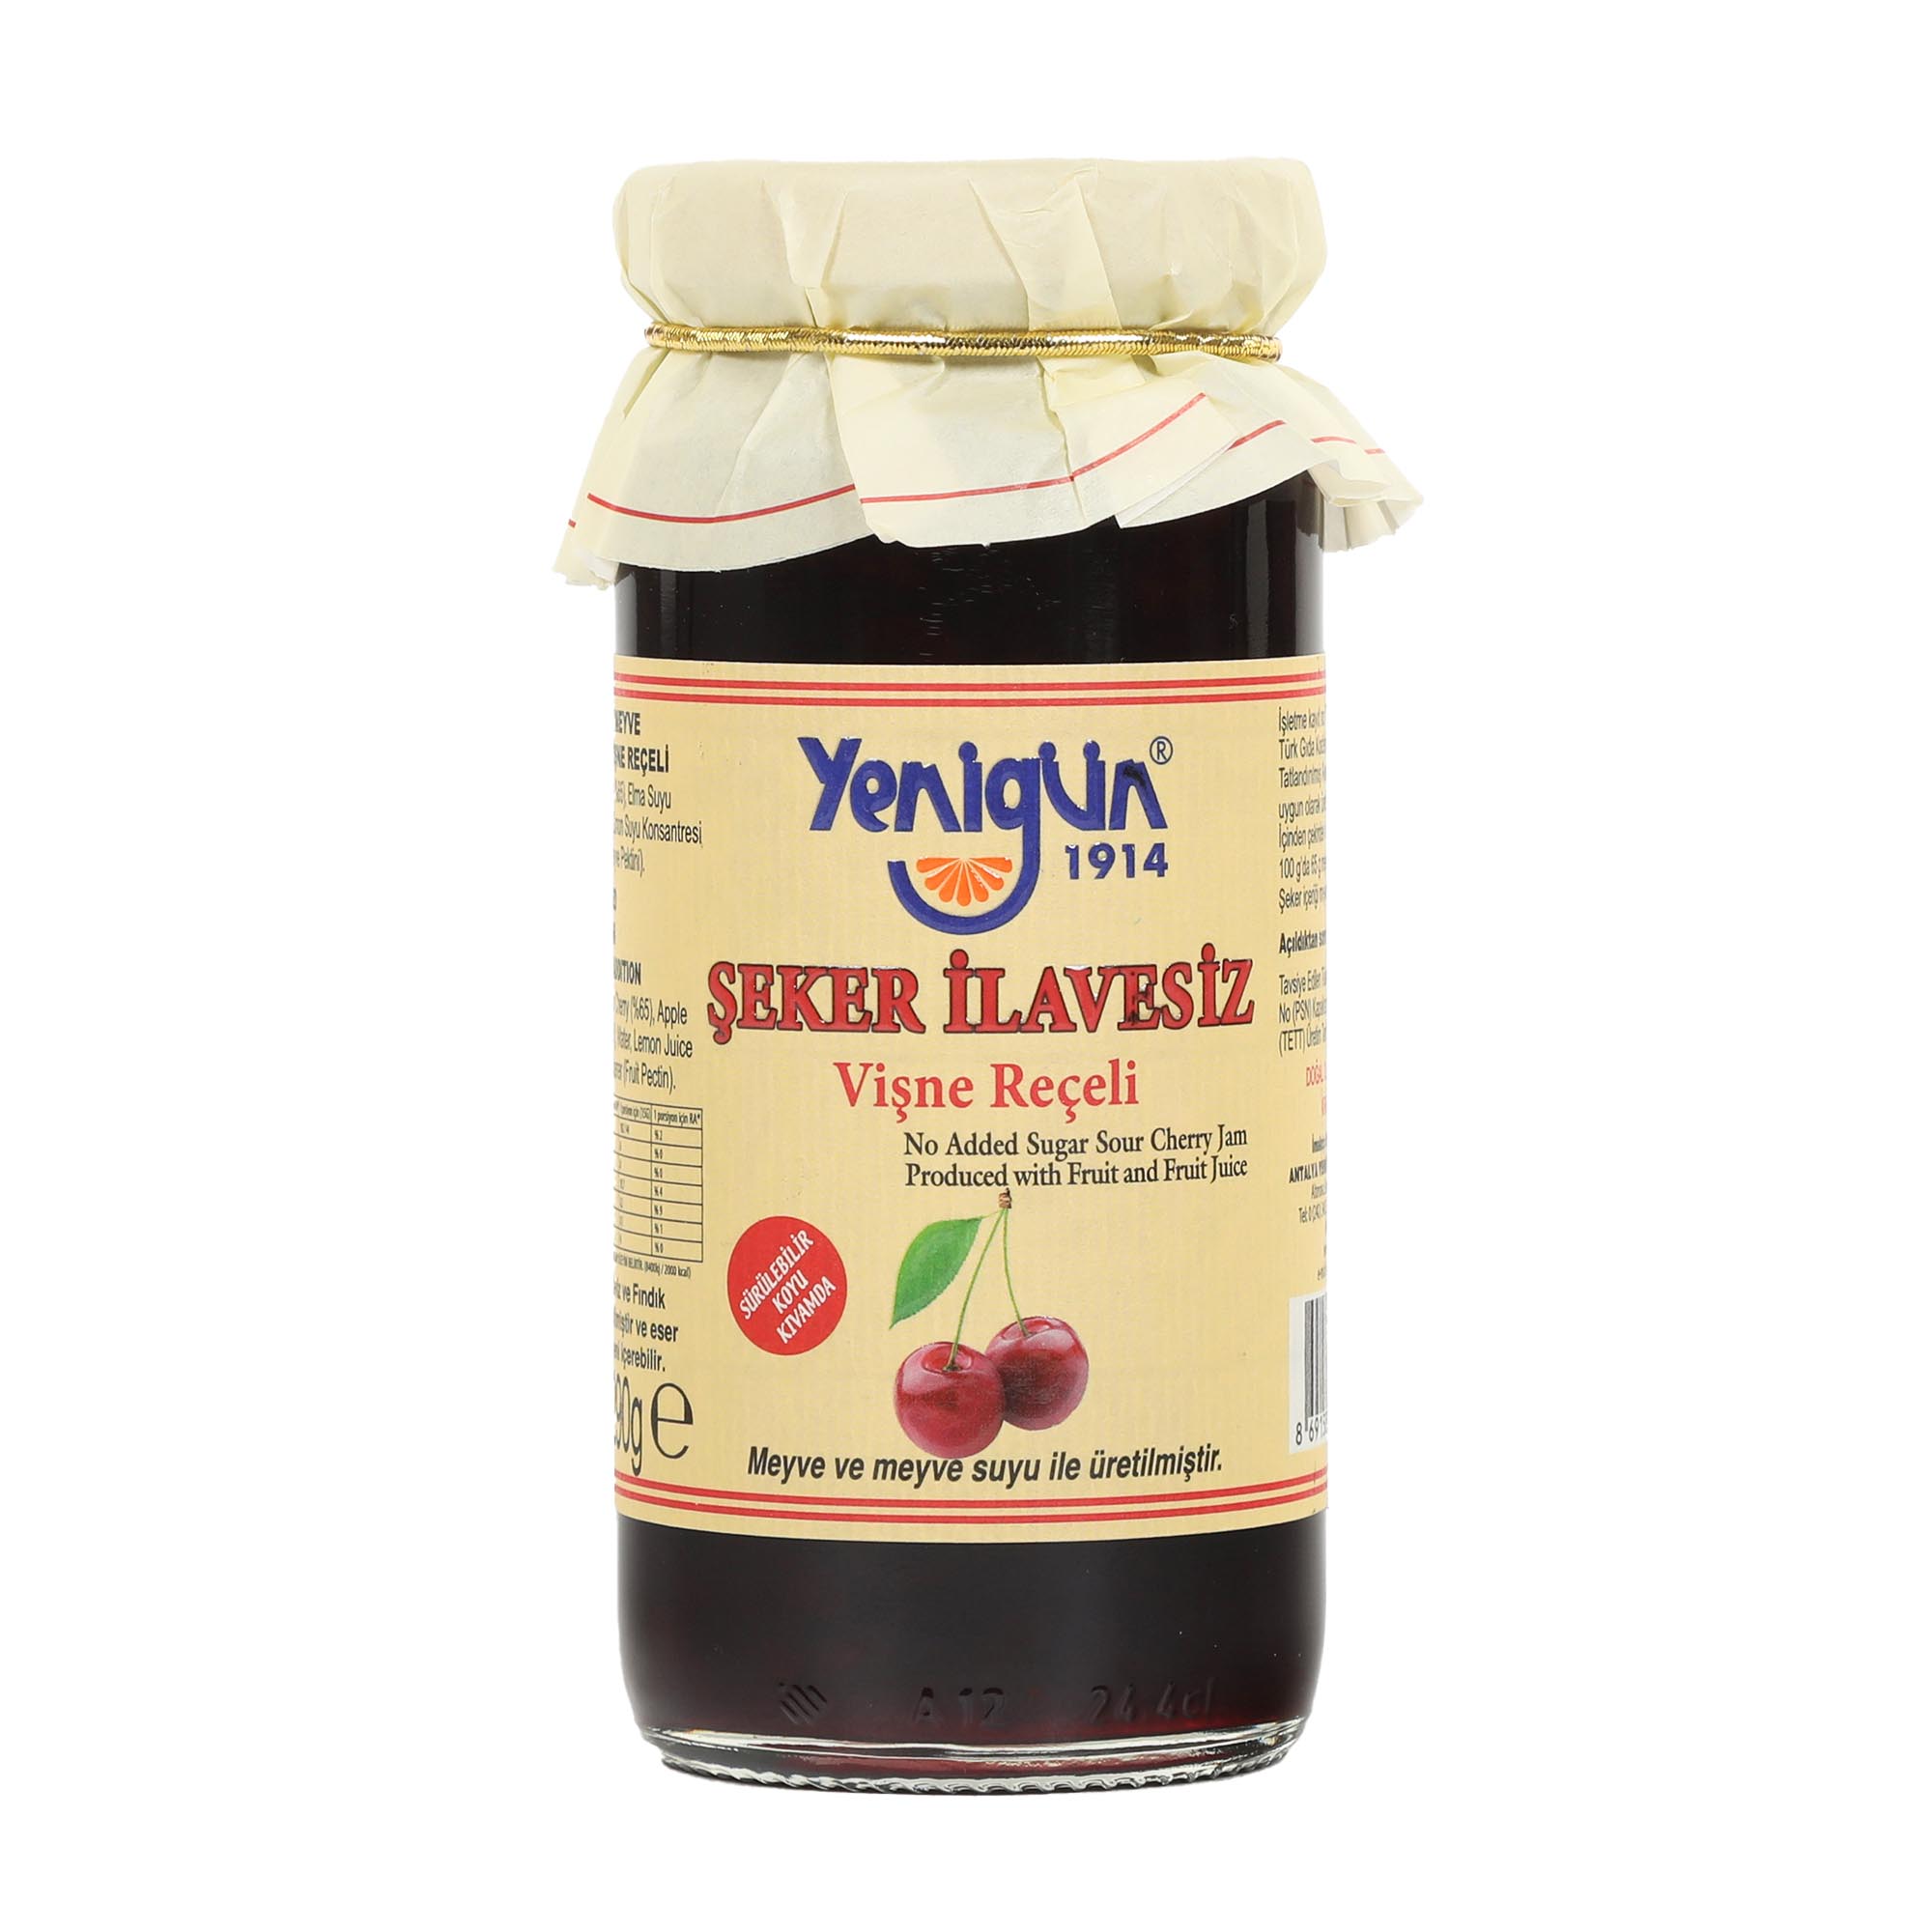 Варенье Yenigun из вишни б/с, 290 г варенье amado из абрикоса 540 г